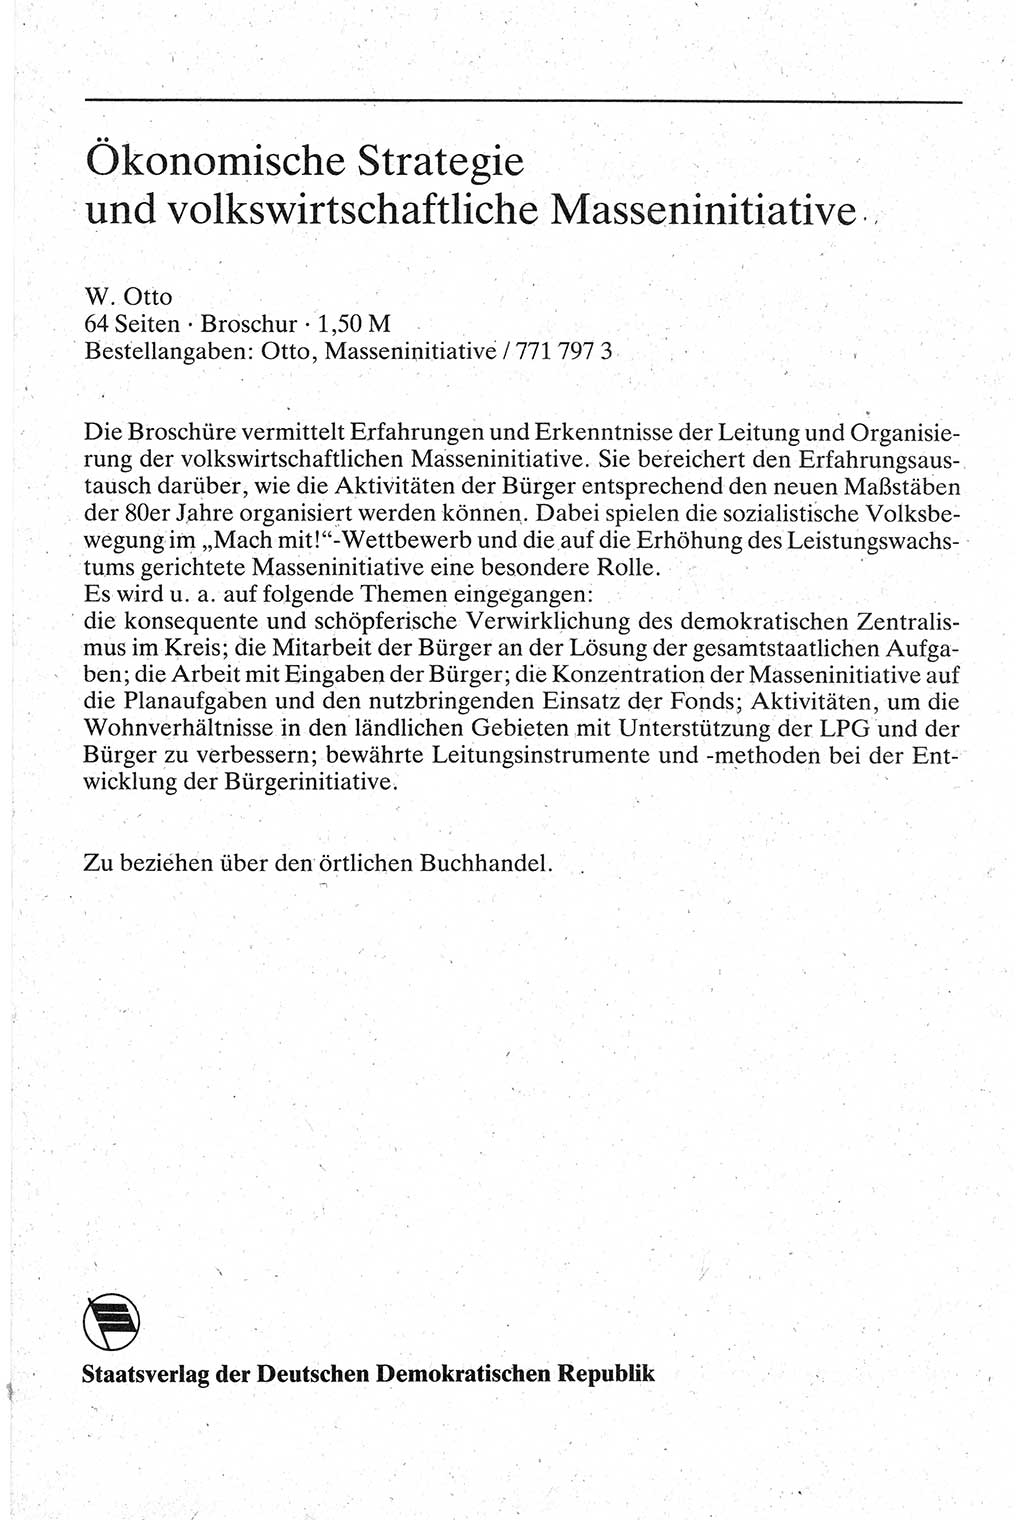 Handbuch für den Abgeordneten [Deutsche Demokratische Republik (DDR)] 1984, Seite 224 (Hb. Abg. DDR 1984, S. 224)